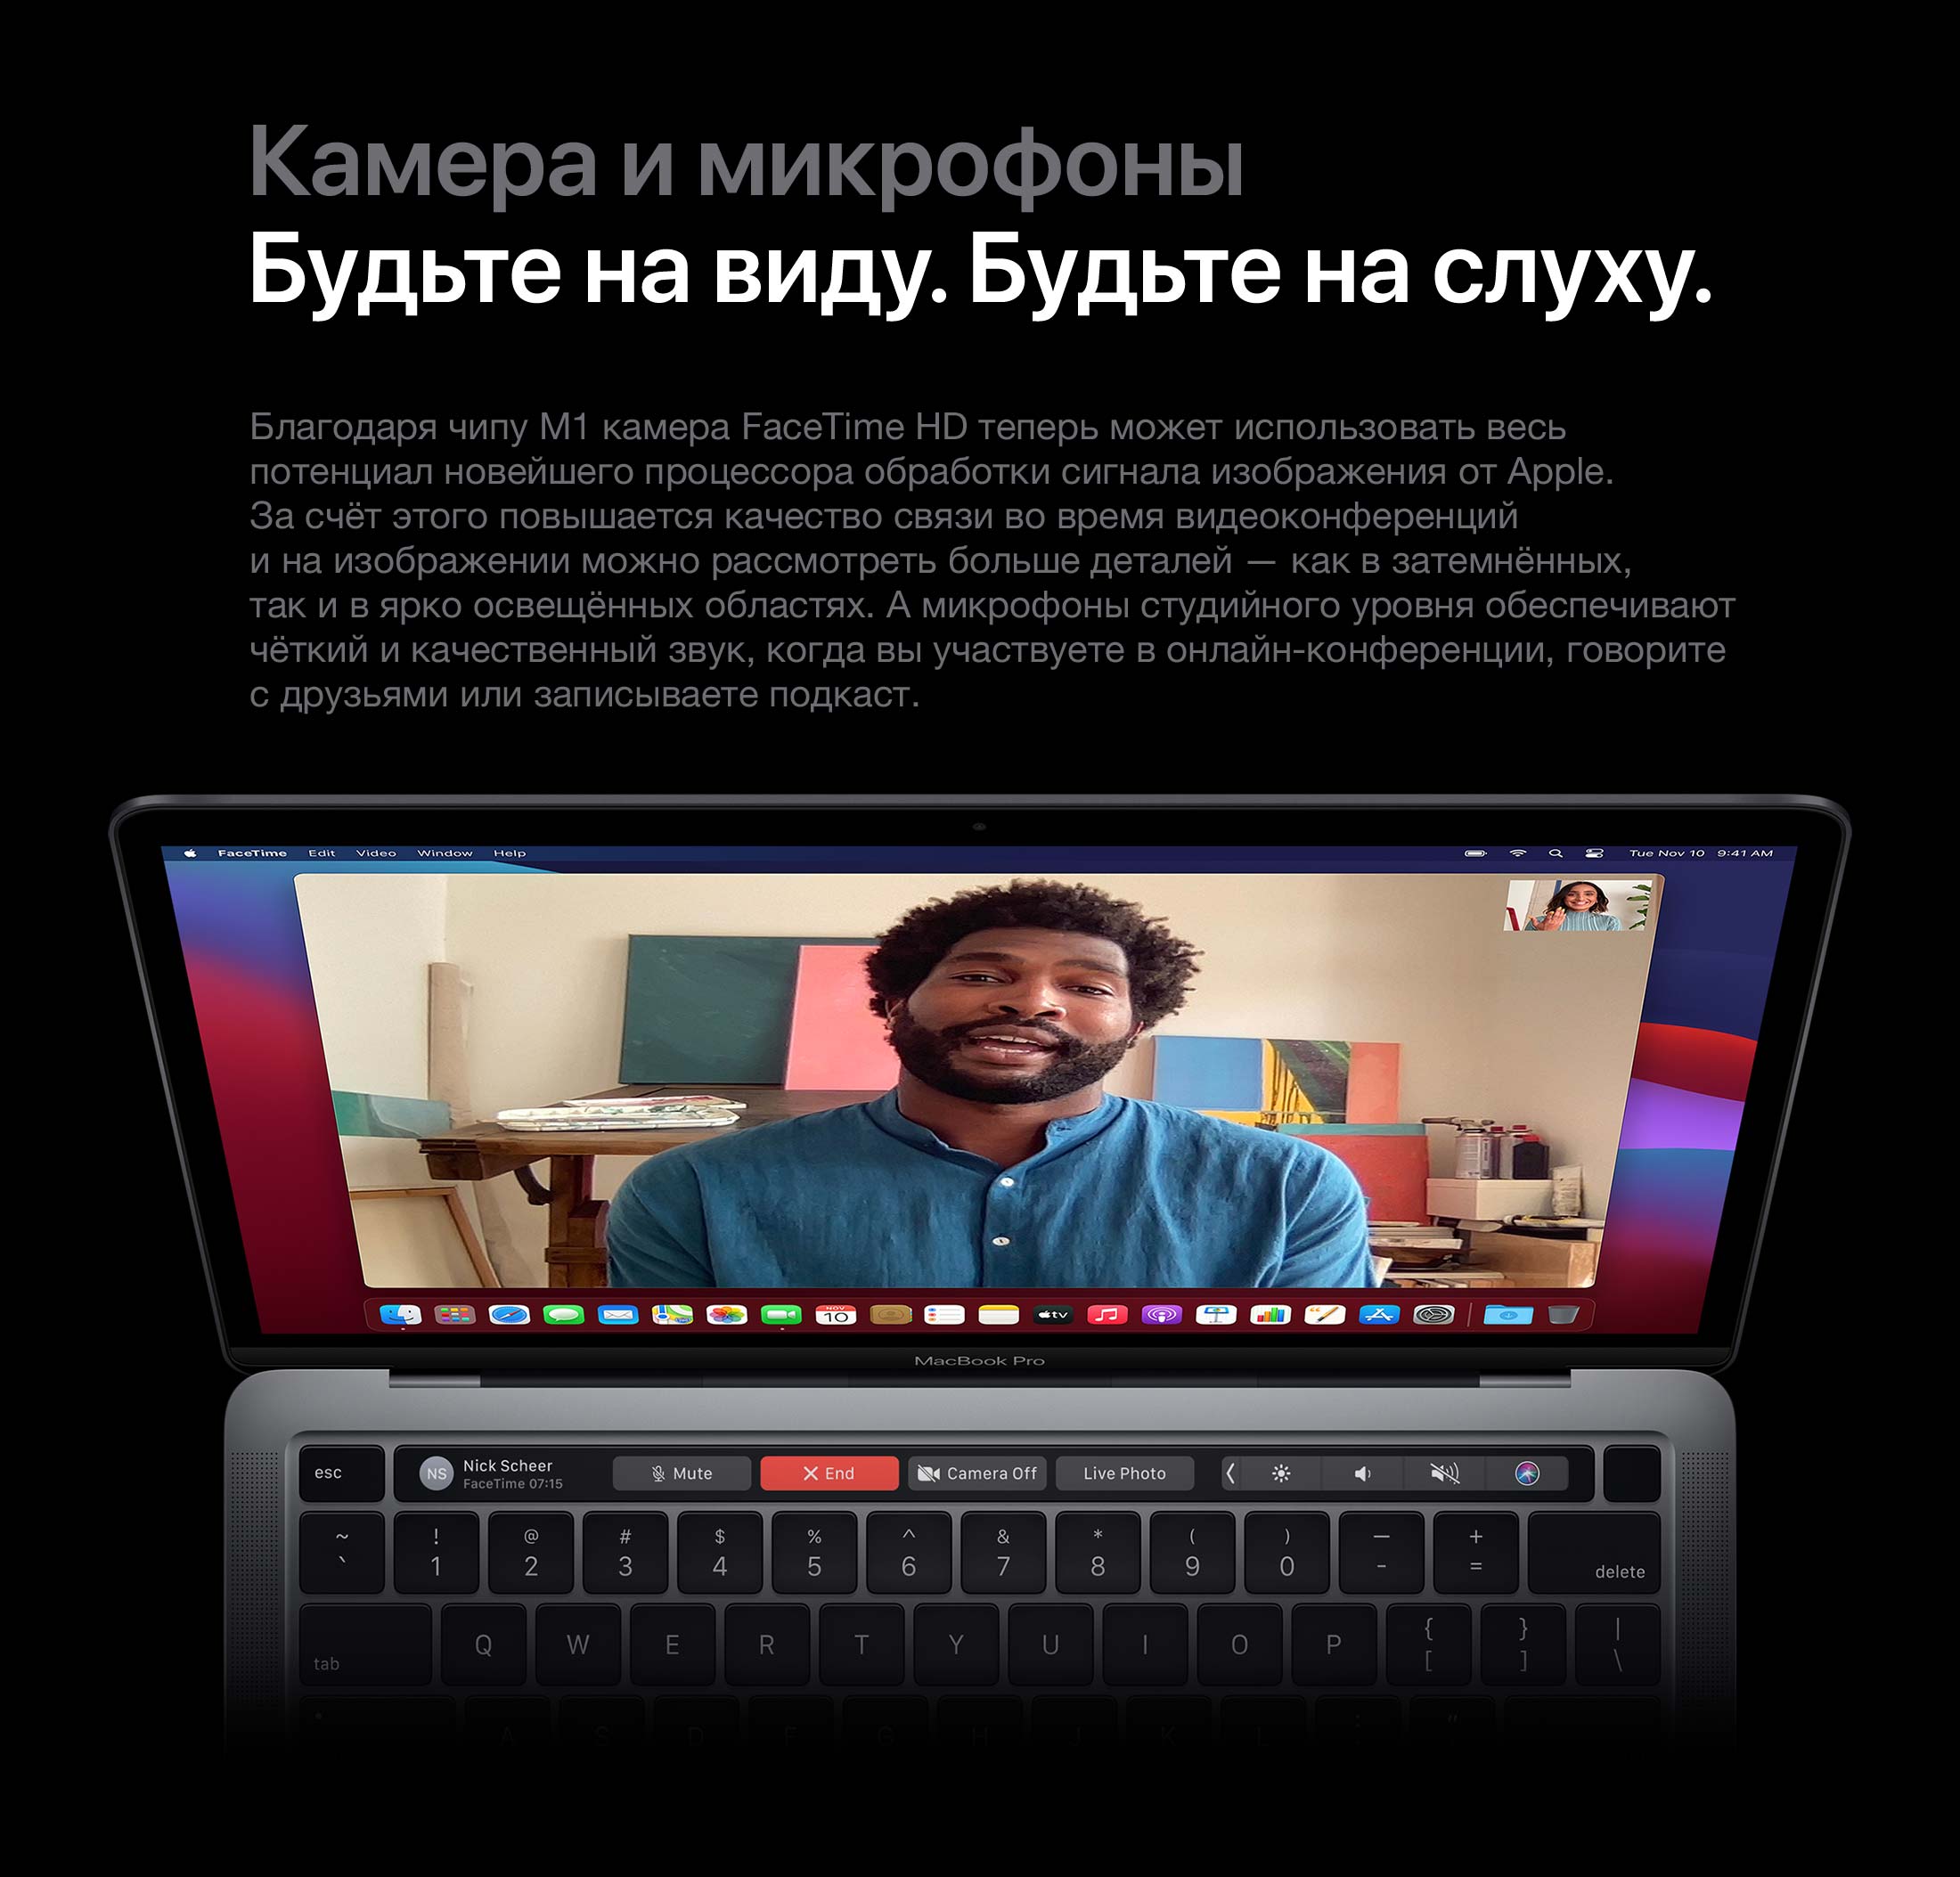 Купить Ноутбук Apple В Москве Недорого